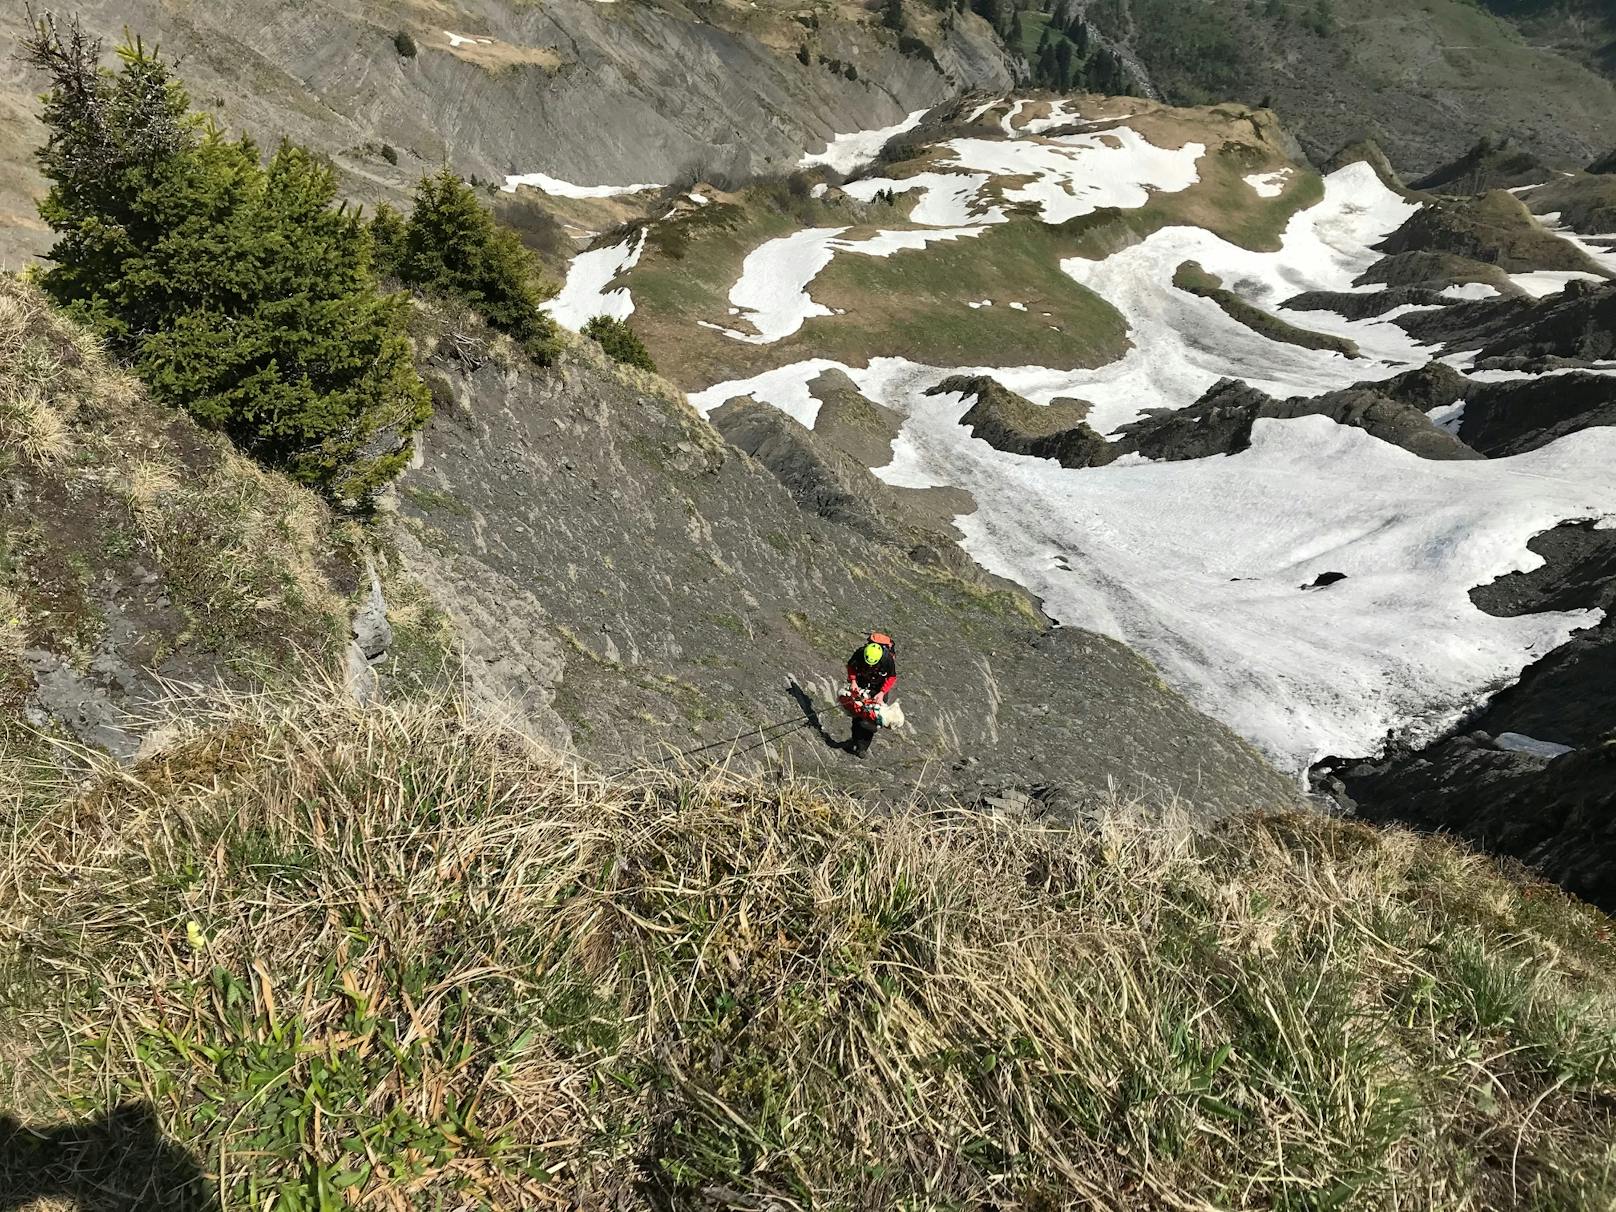 Der Golden Retriever einer Wanderin war knapp unterhalb des Gipfels abgerutscht und rund 60 Meter über die steile, felsdurchsetzen Ostwand gestürzt.